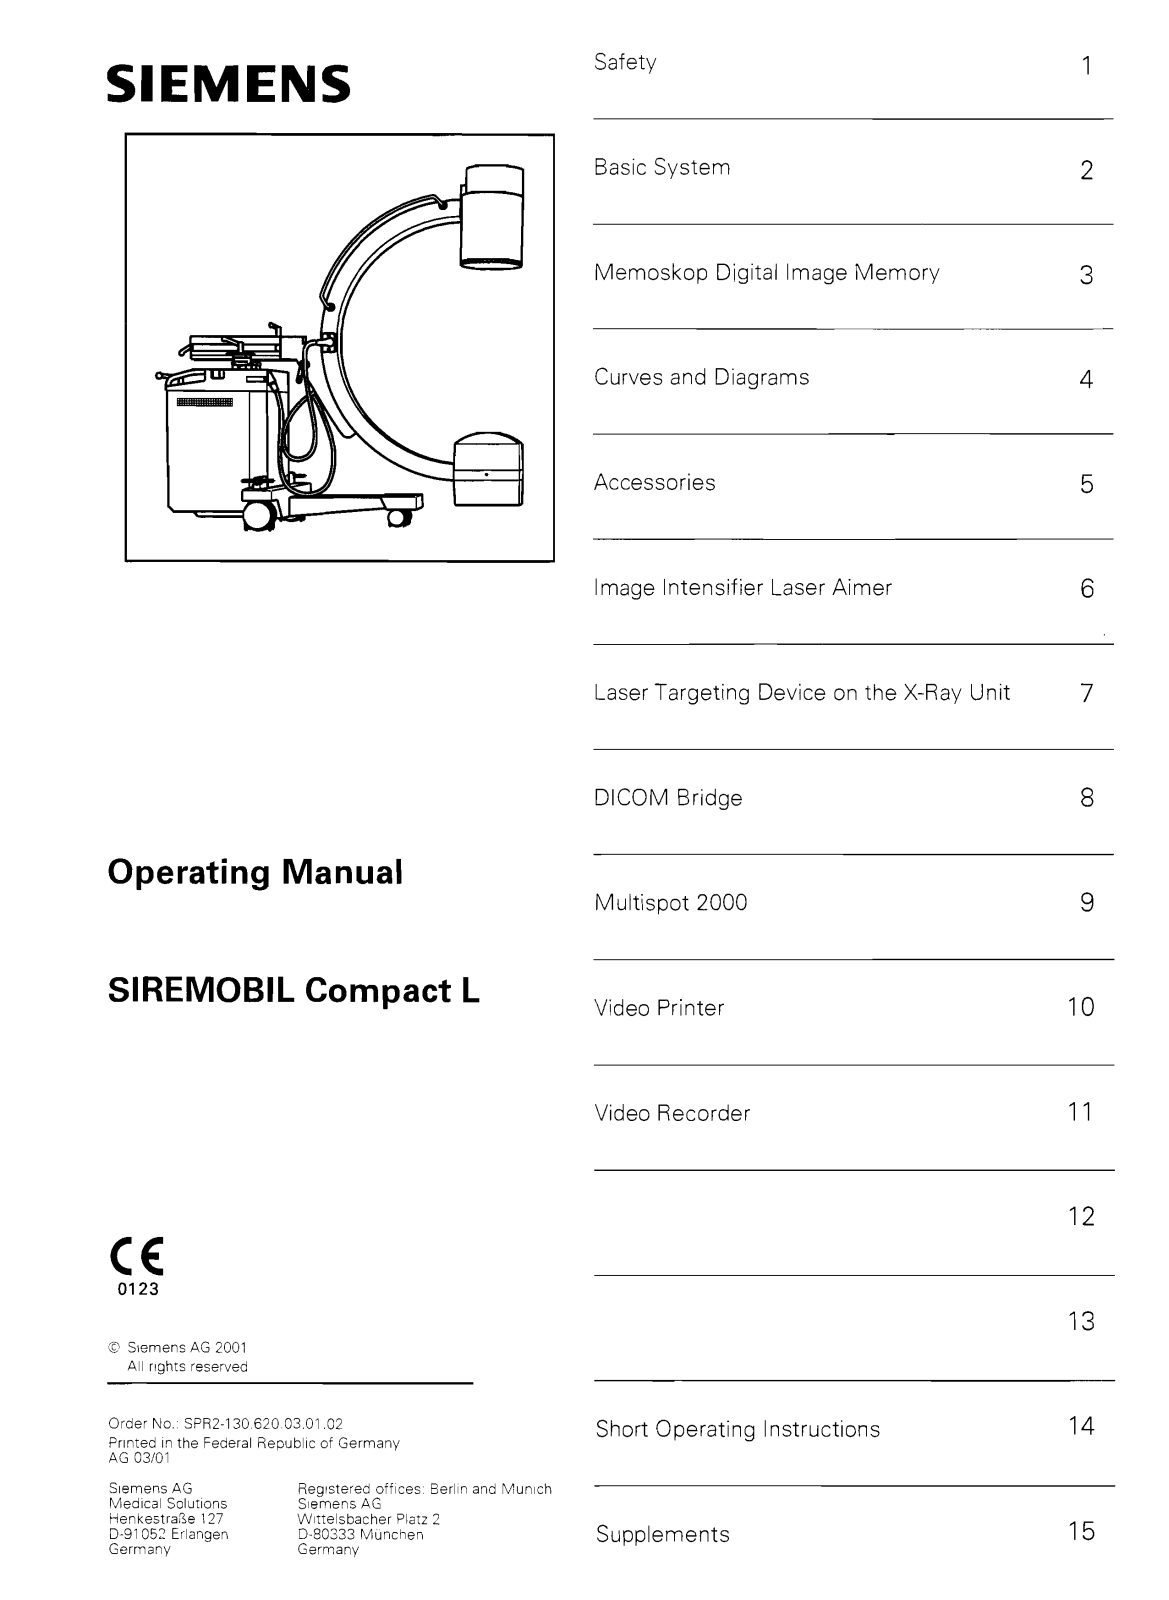 Siemens Siremobil Compact L User Manual